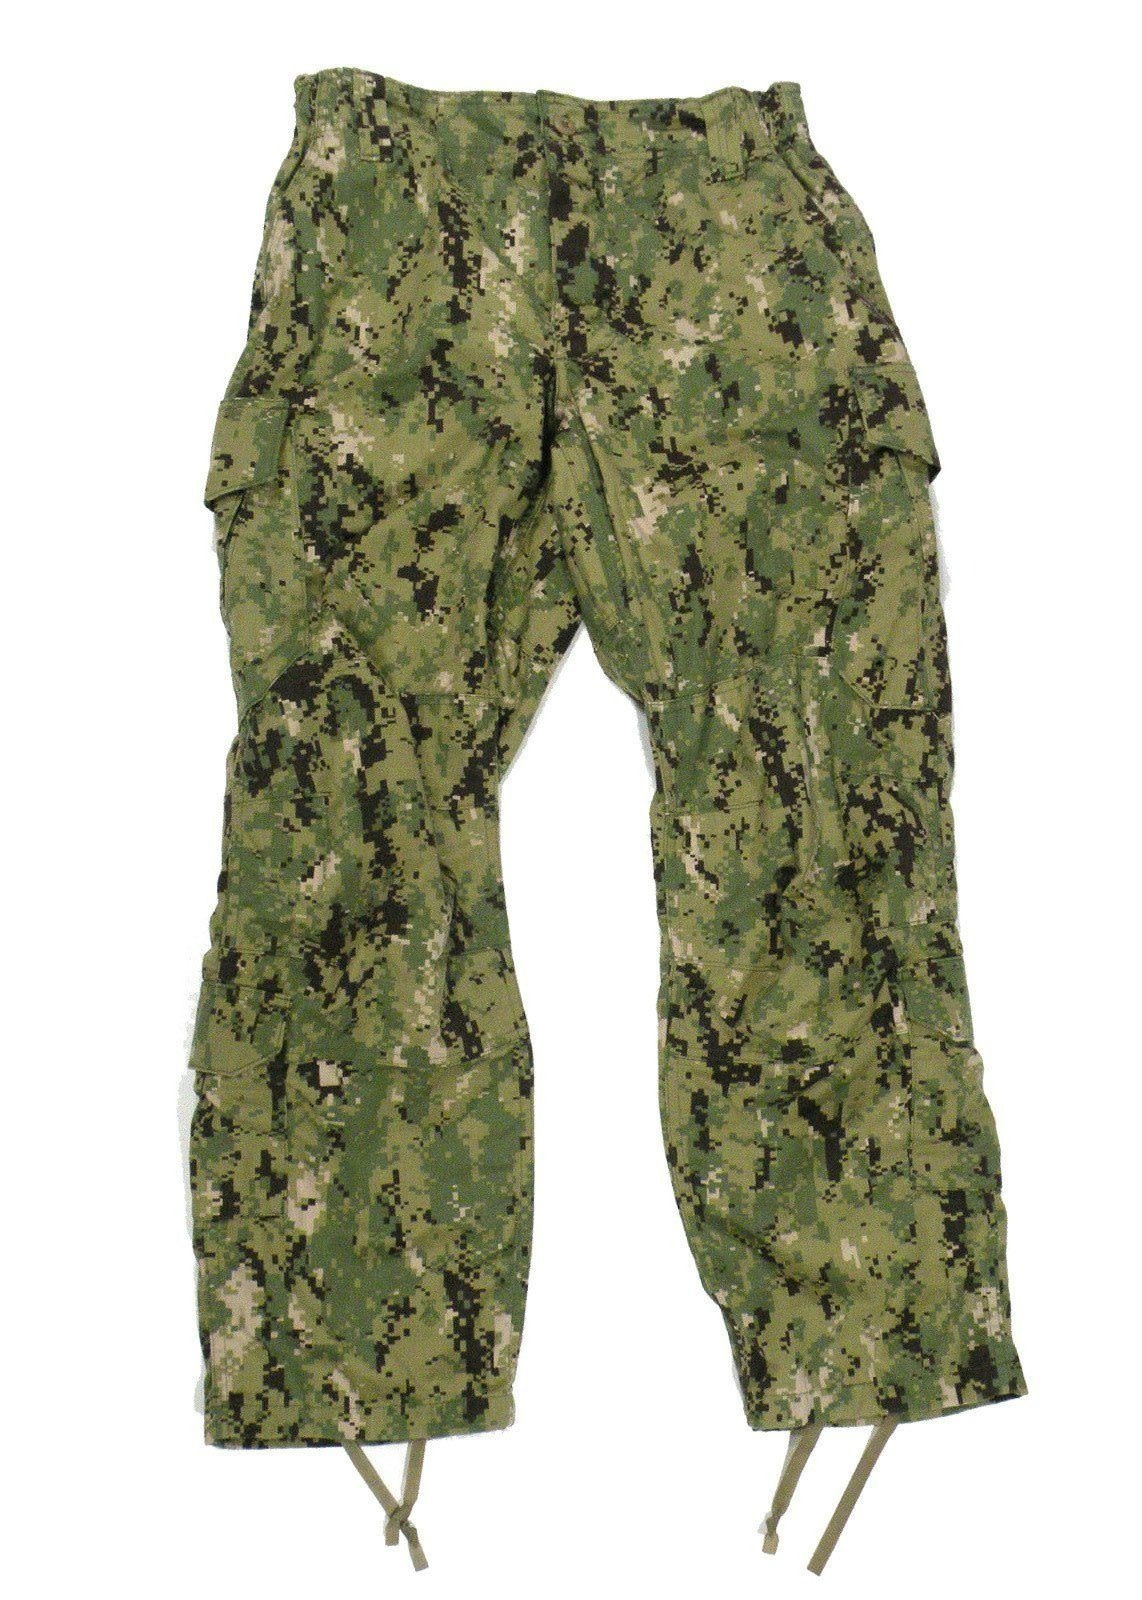 GI Navy Working Uniform Type III AOR2 Woodland Camo Pants